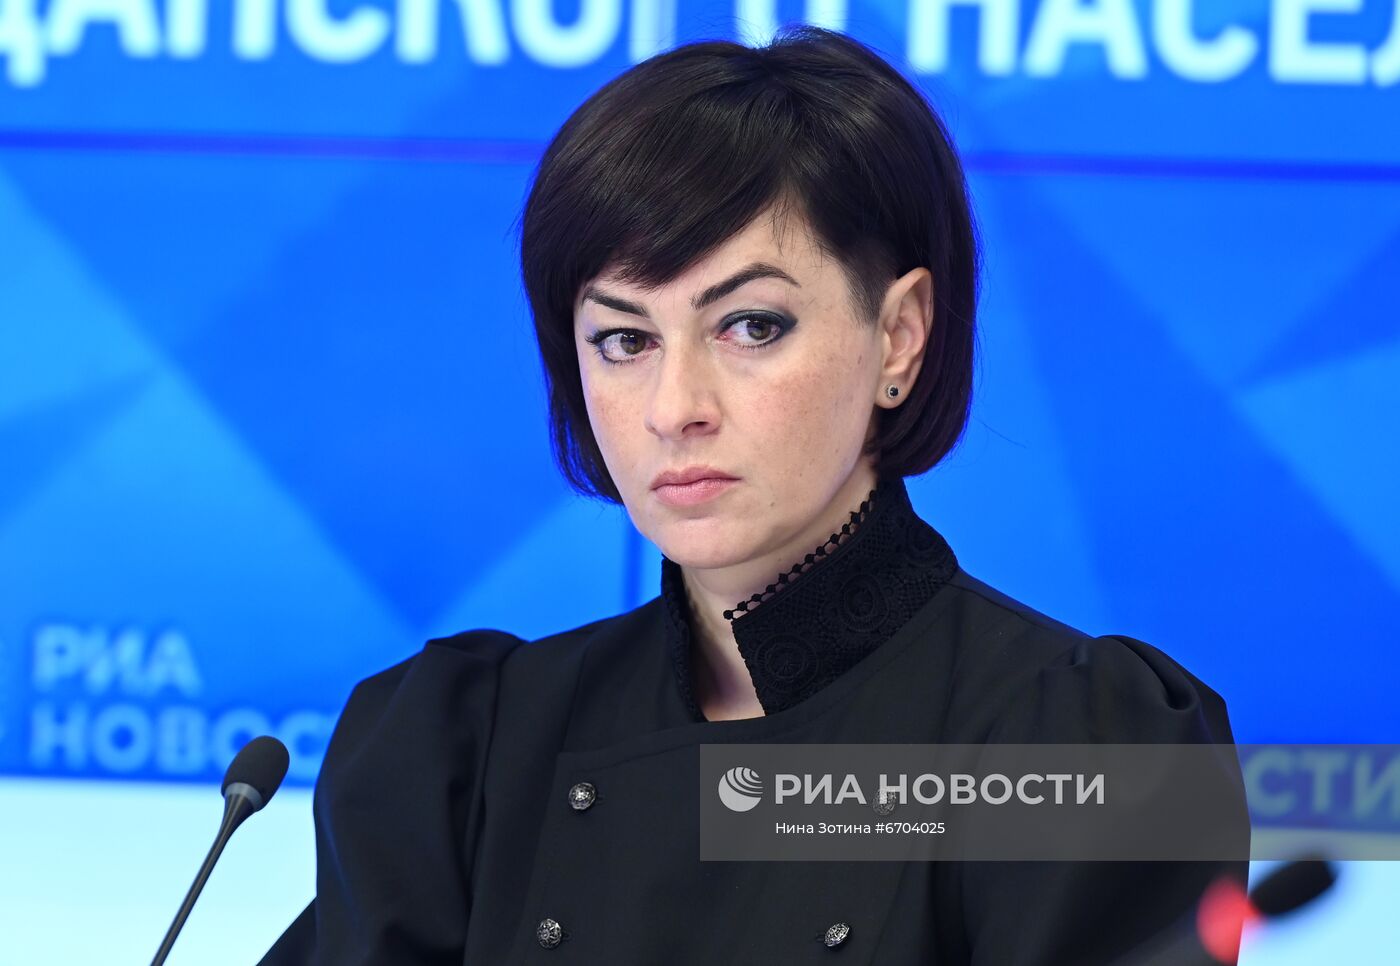 Онлайн-конференция на тему: "Опаленная память Донбасса: военные преступления украинской армии и новые данные о массовых убийствах гражданского населения"